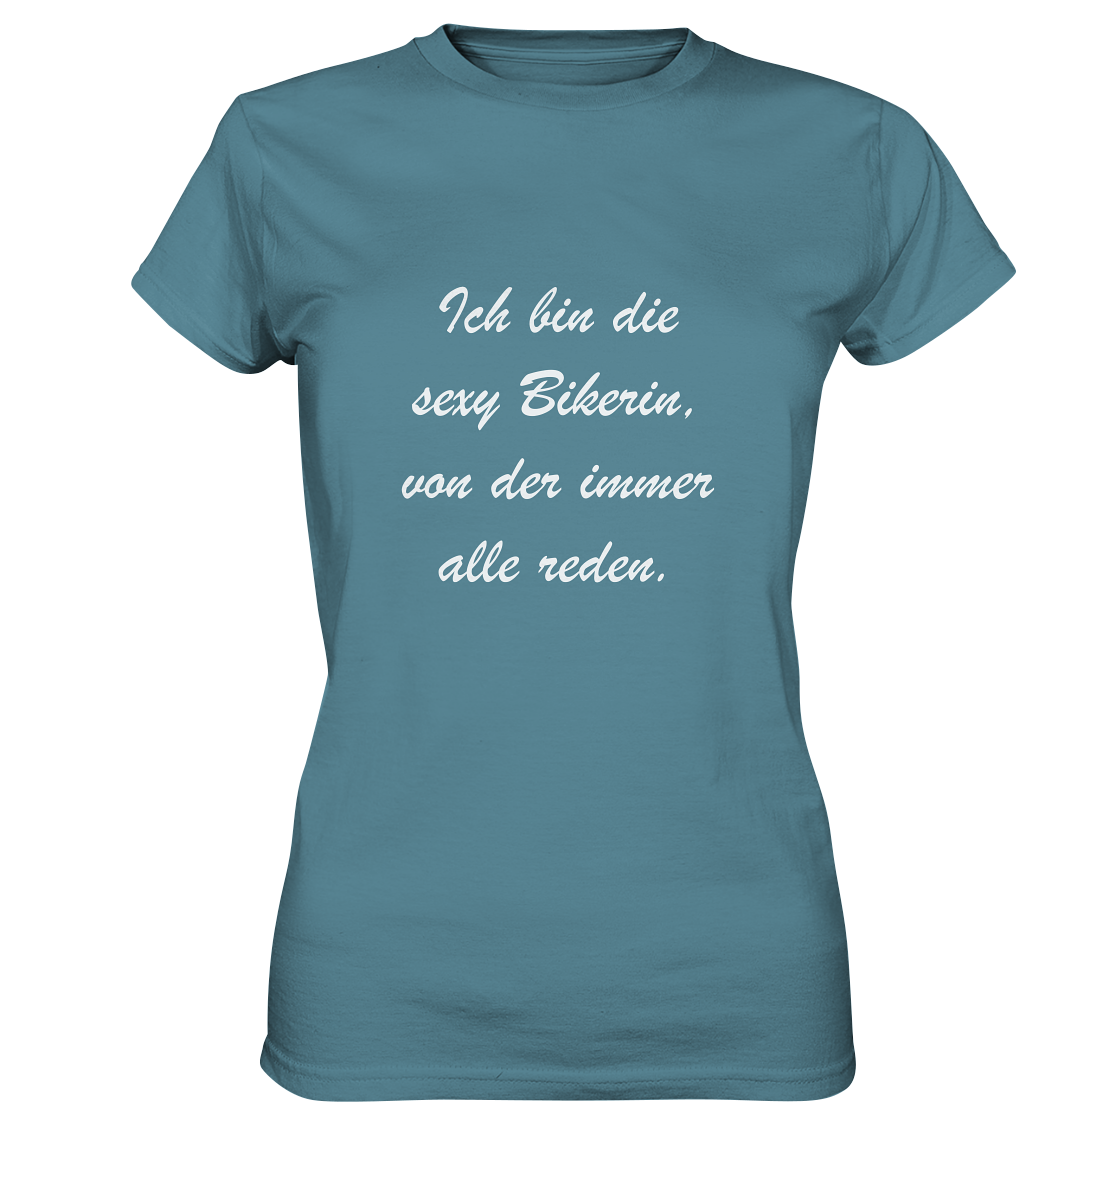 Damen-T-Shirt, Rundhals, mit weißem Spruch "Ich bin die sexy Bikerin, von der immer alle reden." hell blau